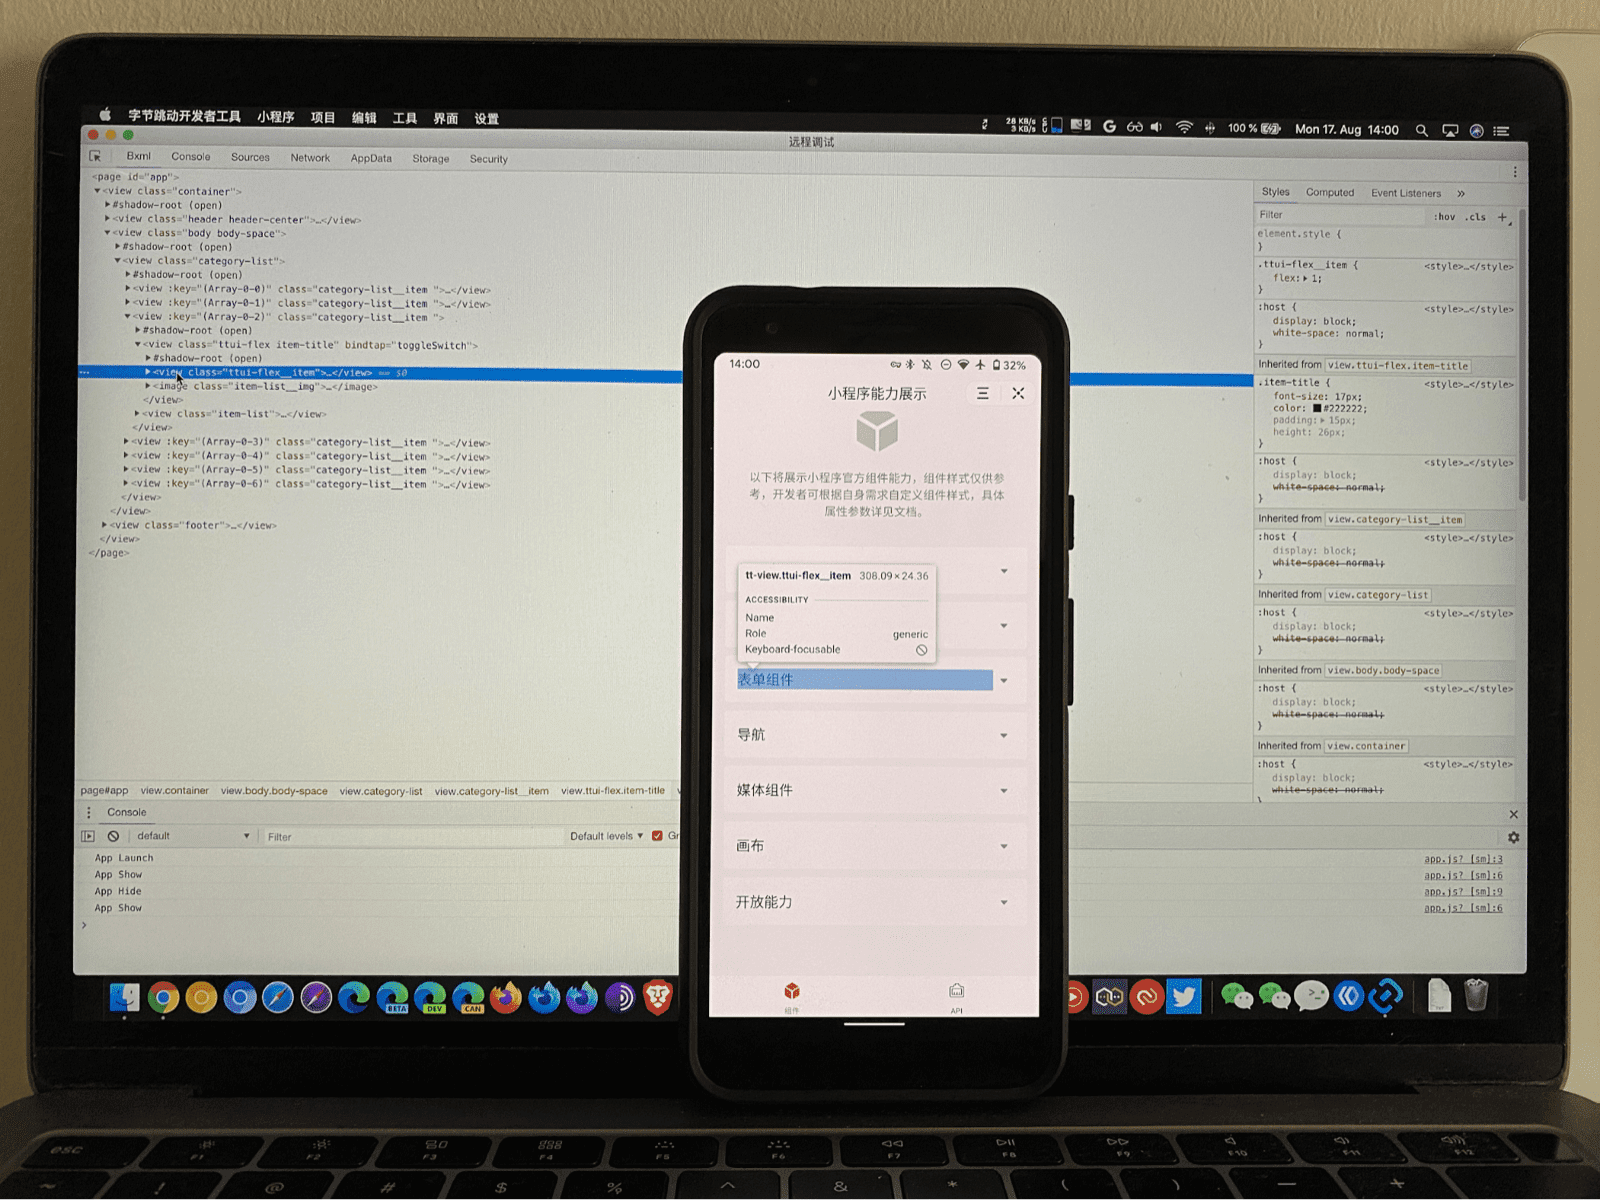 미니 앱을 실행 중인 휴대전화에서 UI의 일부가 강조 표시된 ByteDance DevTools 디버거가 UI를 검사하는 노트북에서 실행 중입니다.